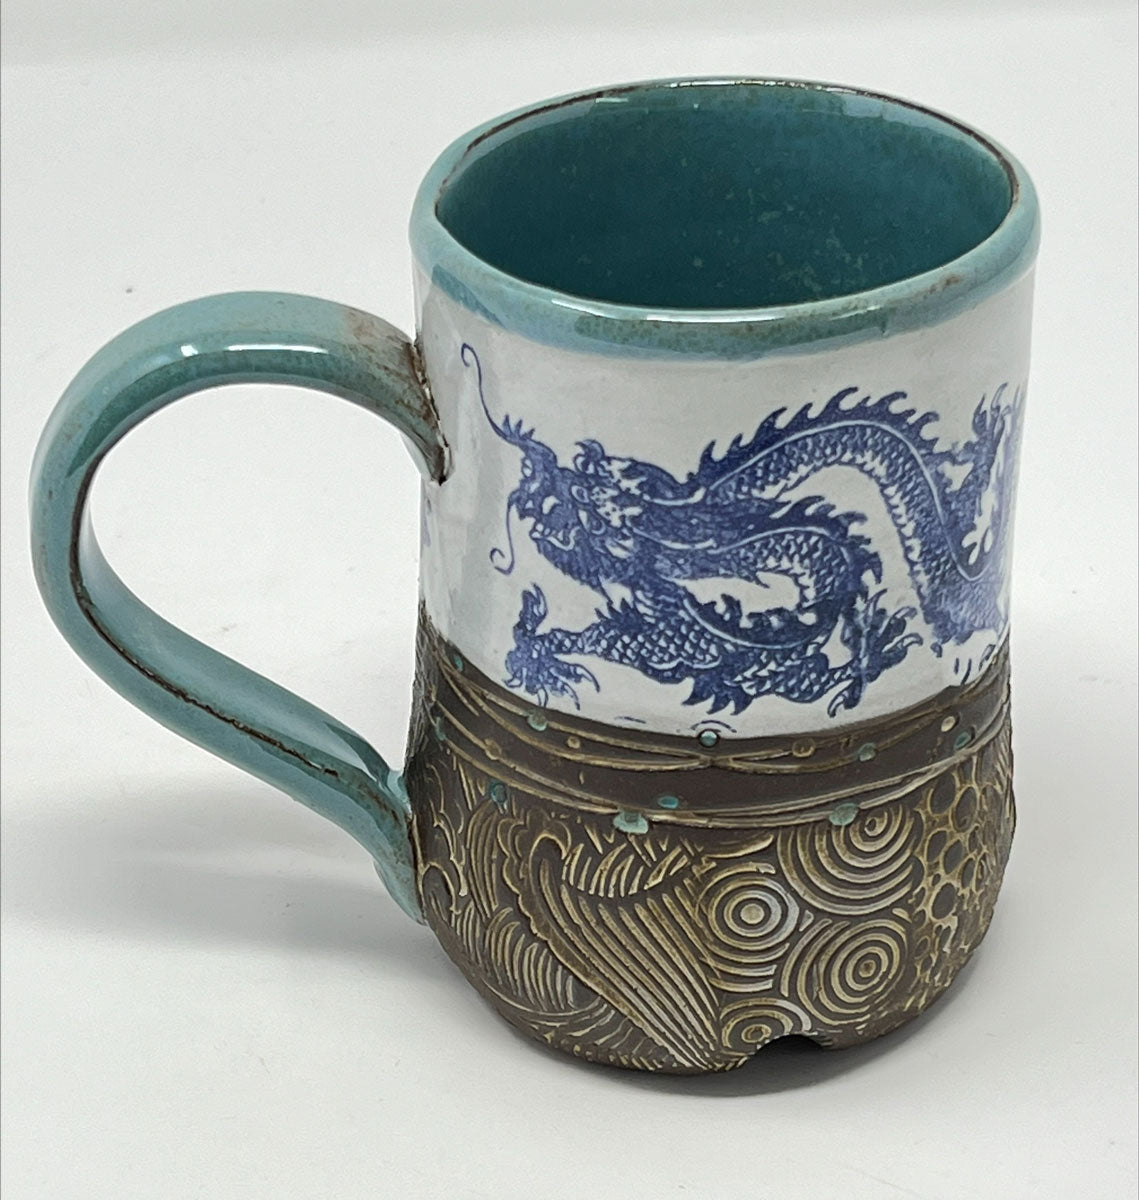 229. Dragon Mug